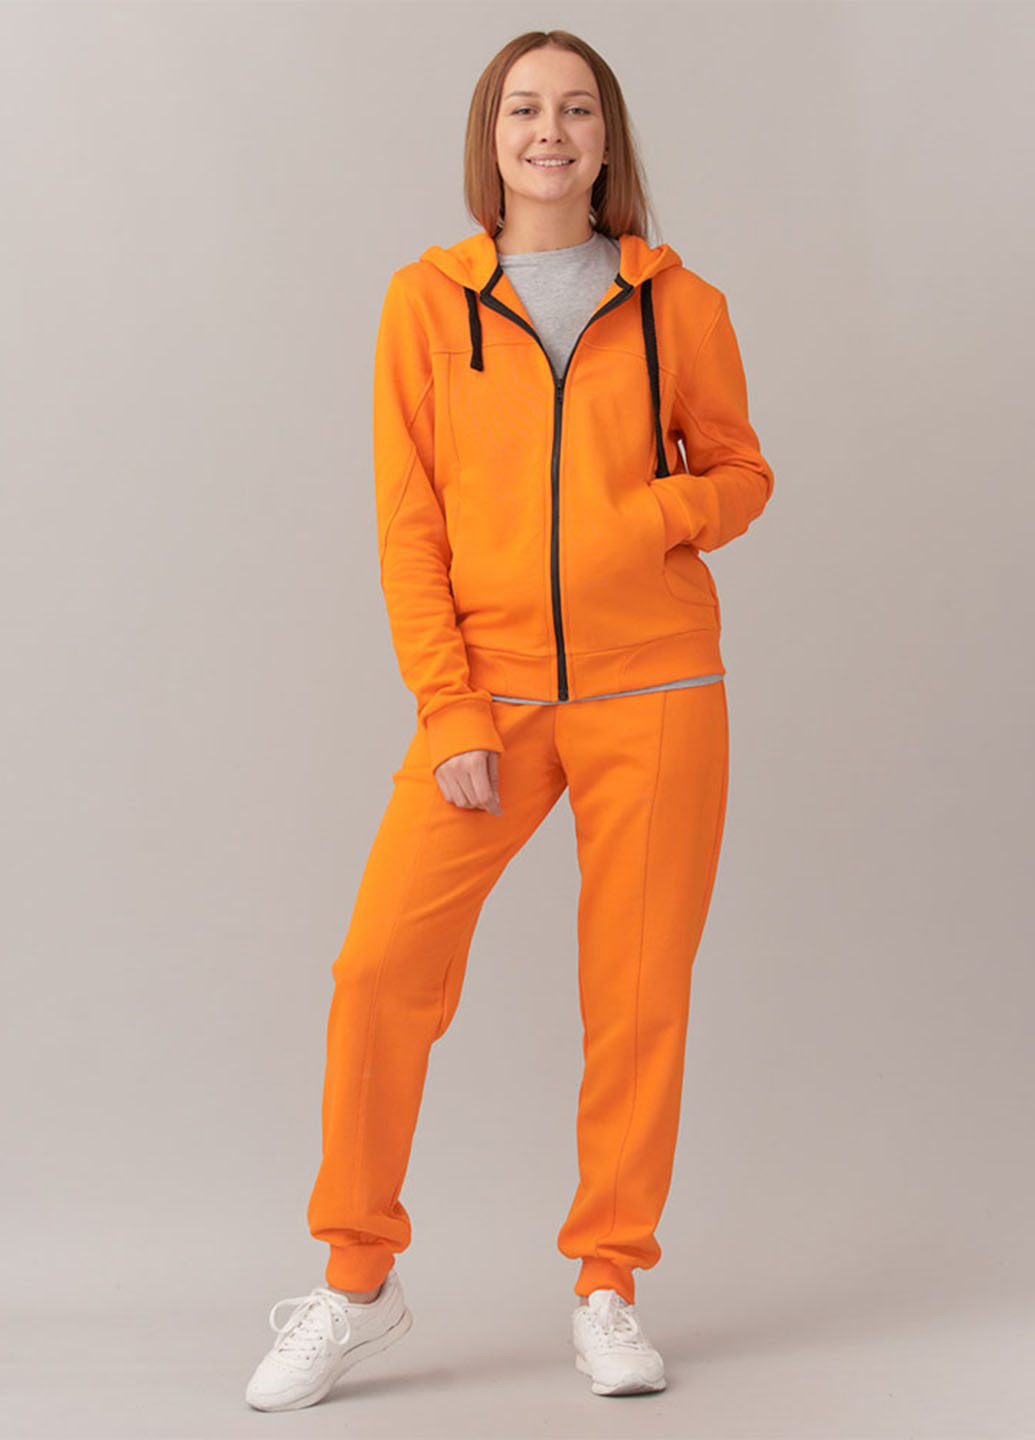 Оранжевые спортивные демисезонные джоггеры брюки Promin